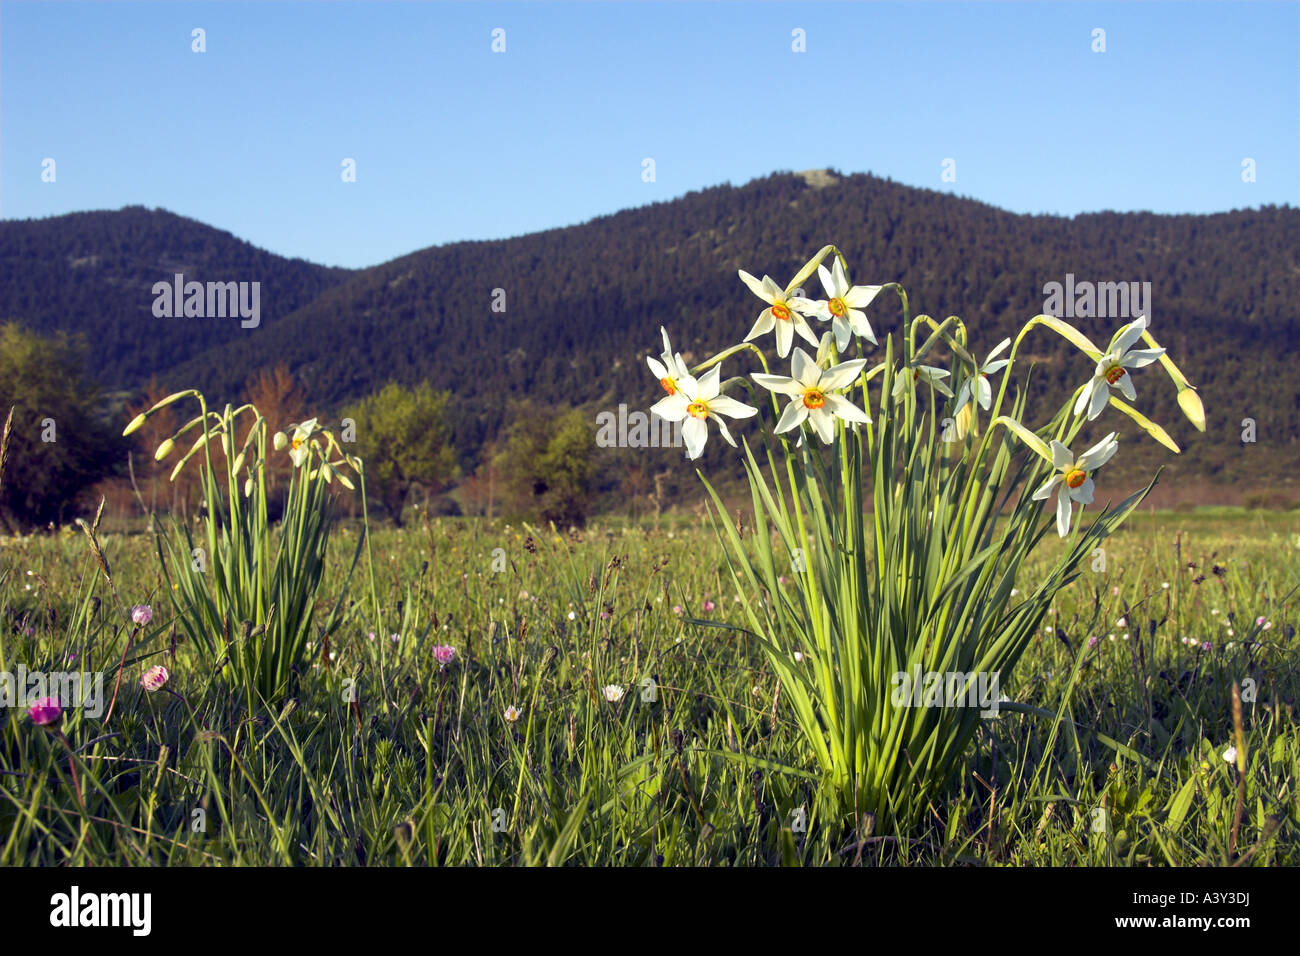 Il fagiano-eye daffodil, fagiano's-eye narciso, poeta narciso (Narcissus poeticus), nella luce della sera di fronte all mountain Foto Stock